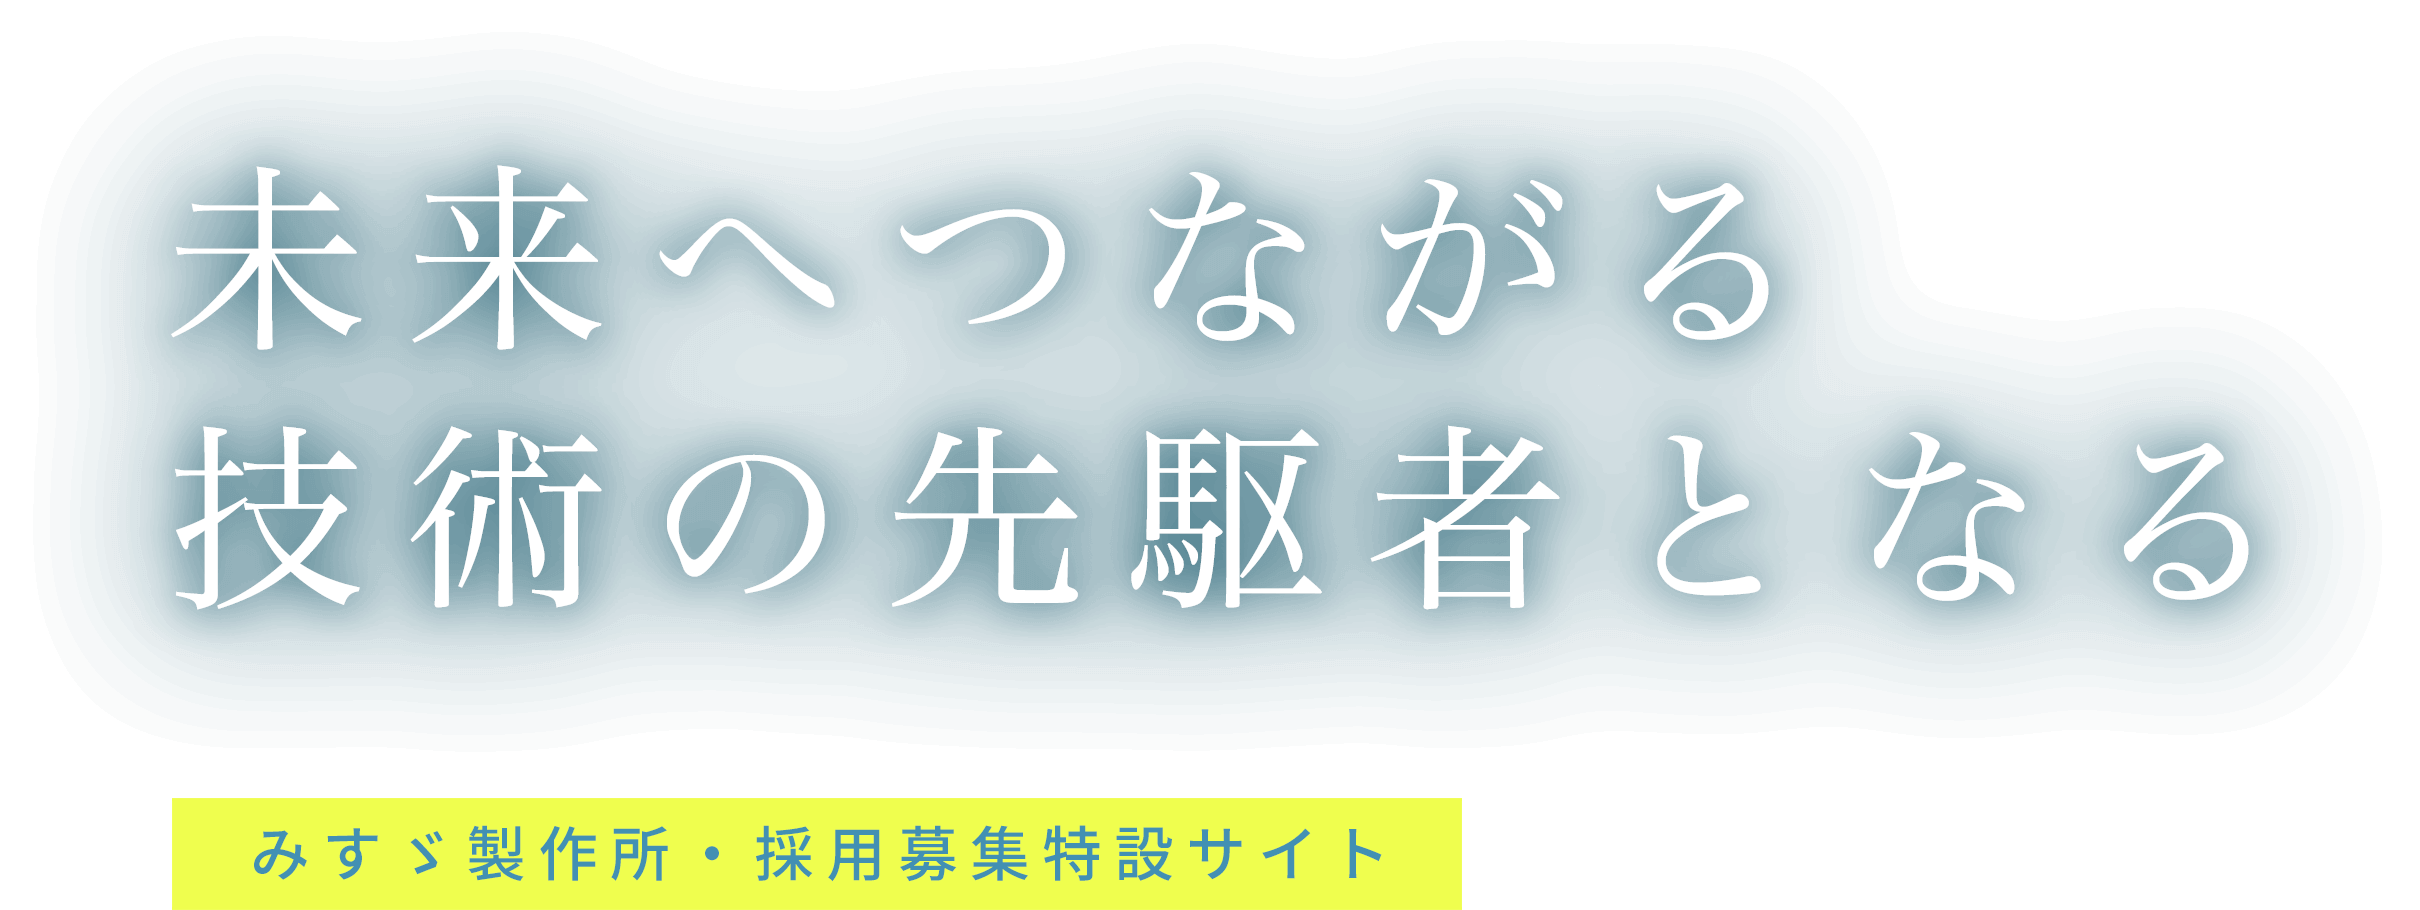 株式会社みすゞ製作所・採用募集特設サイト